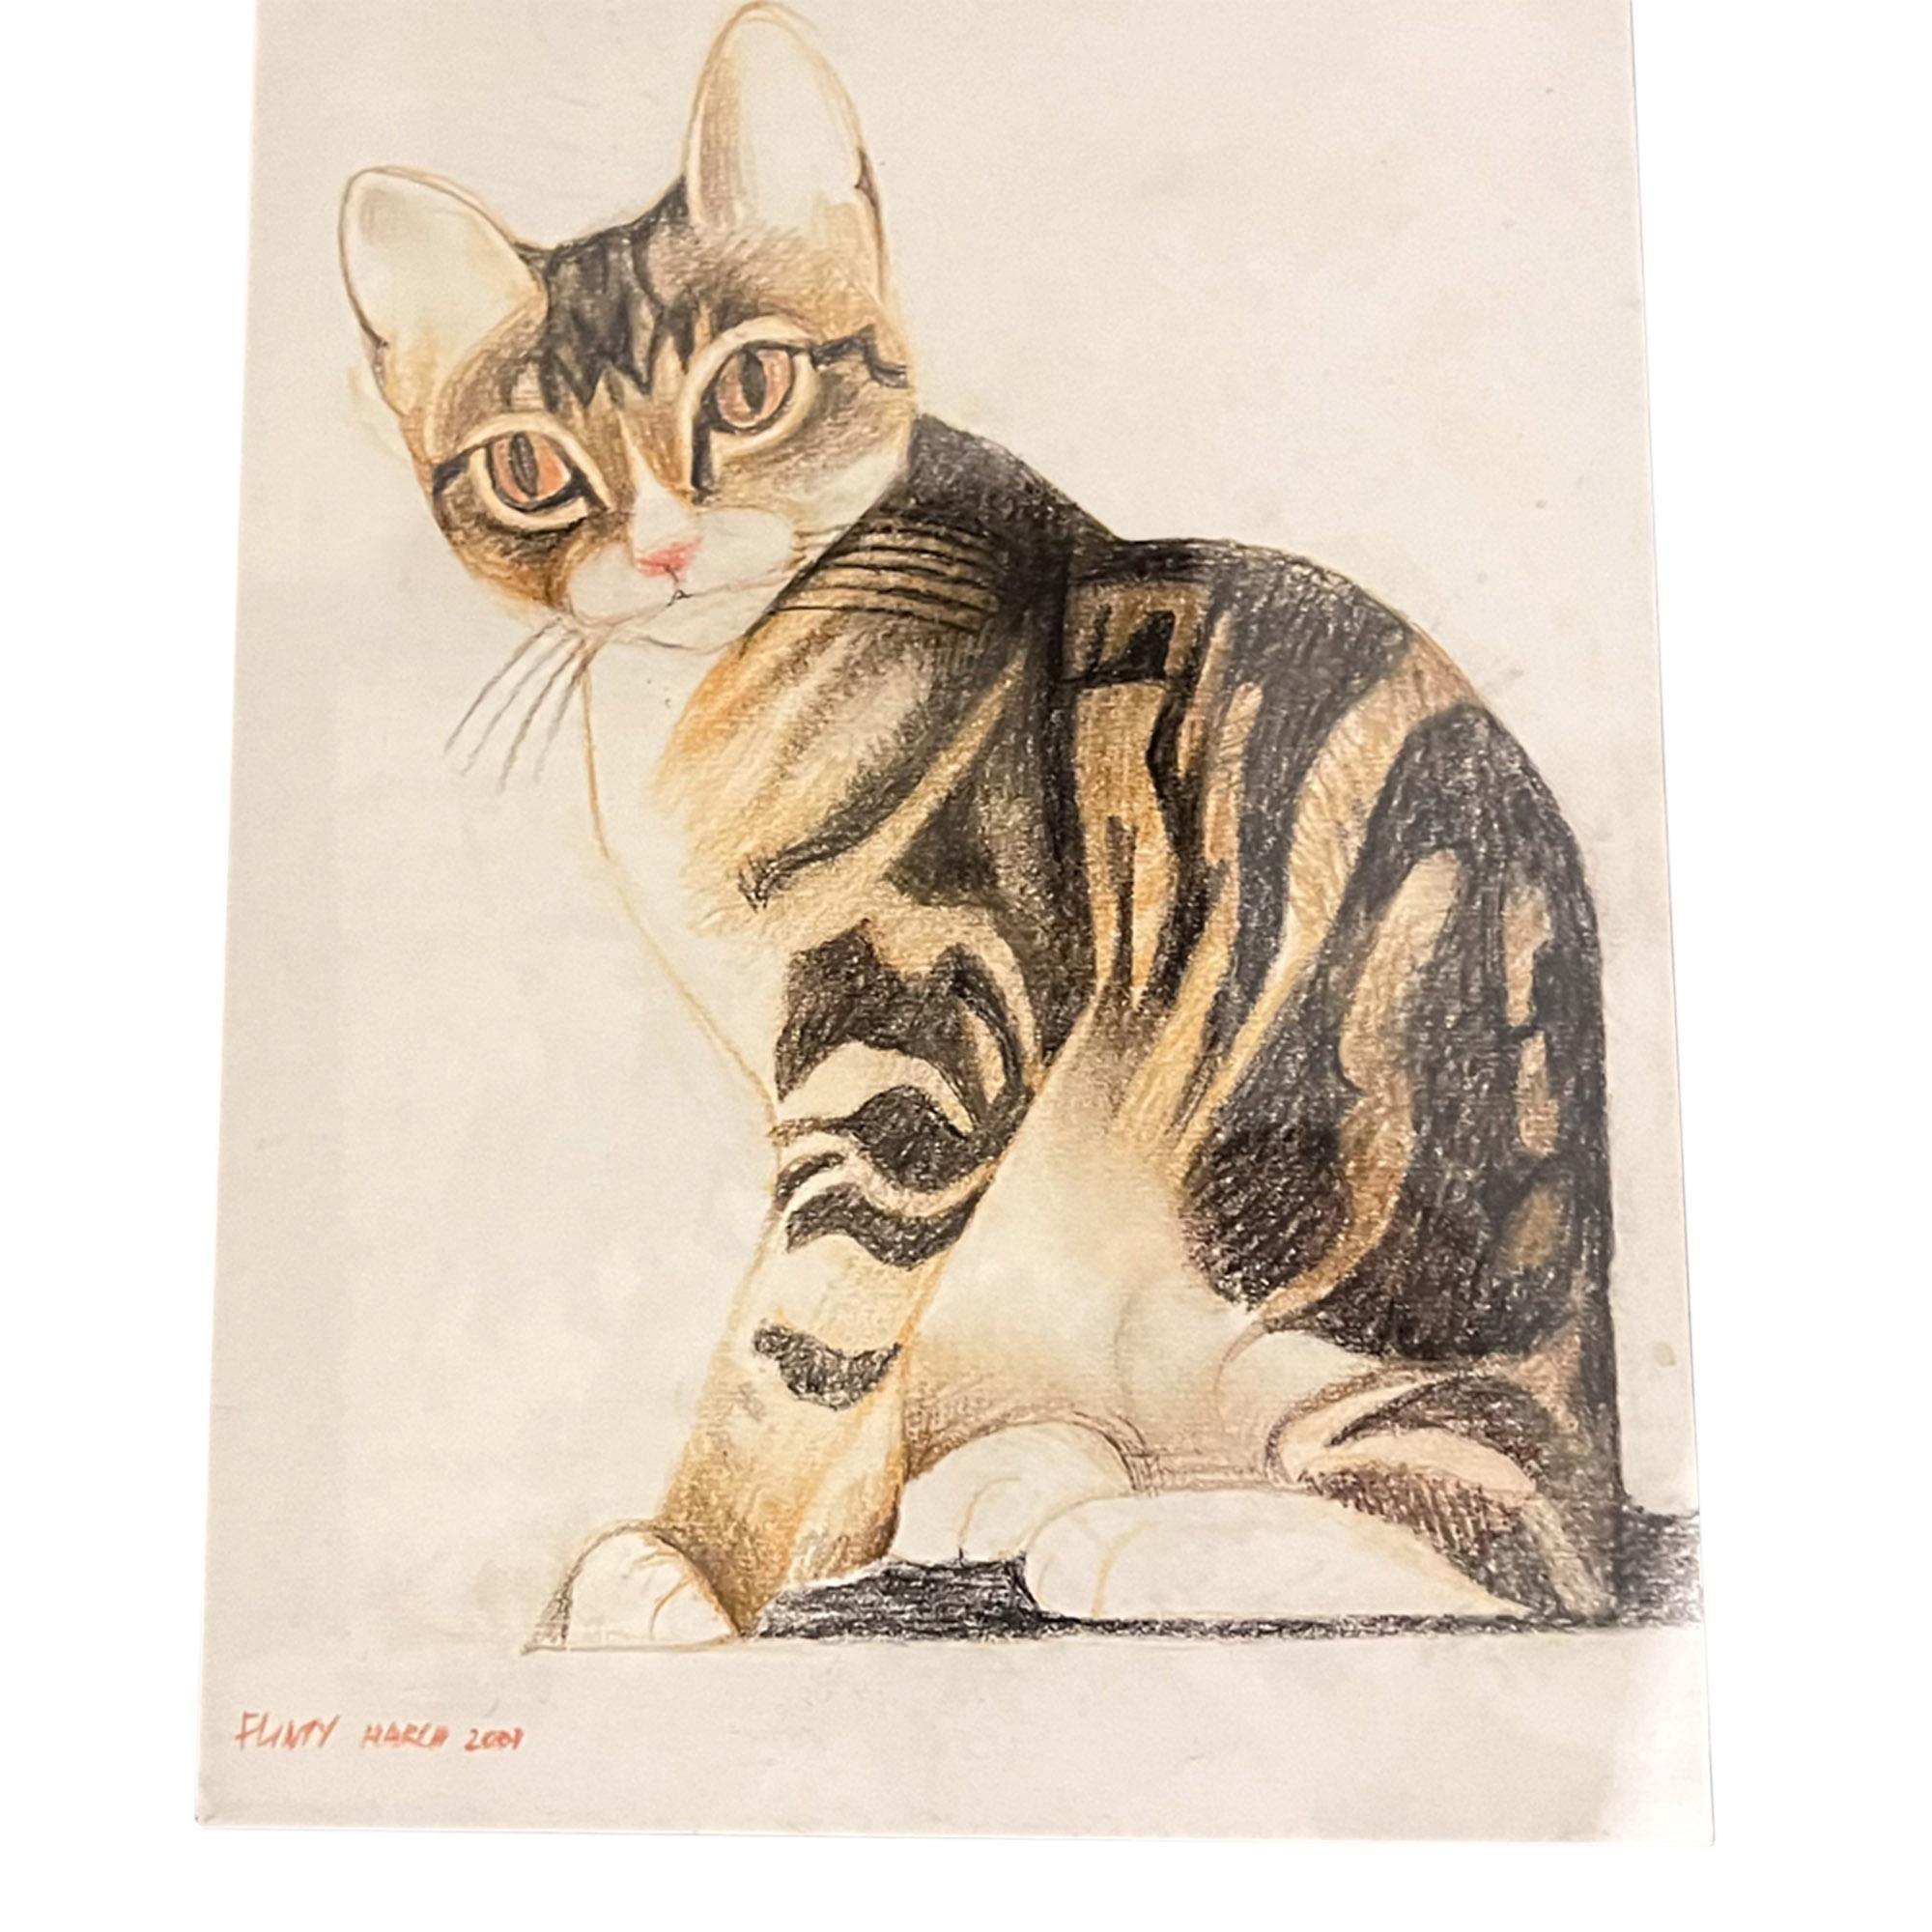 Ce magnifique petit portrait de Flinty le chat a été dessiné au pastel et signé par Alfred Daniels en mars 2007.

Nous avons fait encadrer cette œuvre sur mesure derrière une vitre, avec un simple bois ébonisé et une monture noire. La taille de